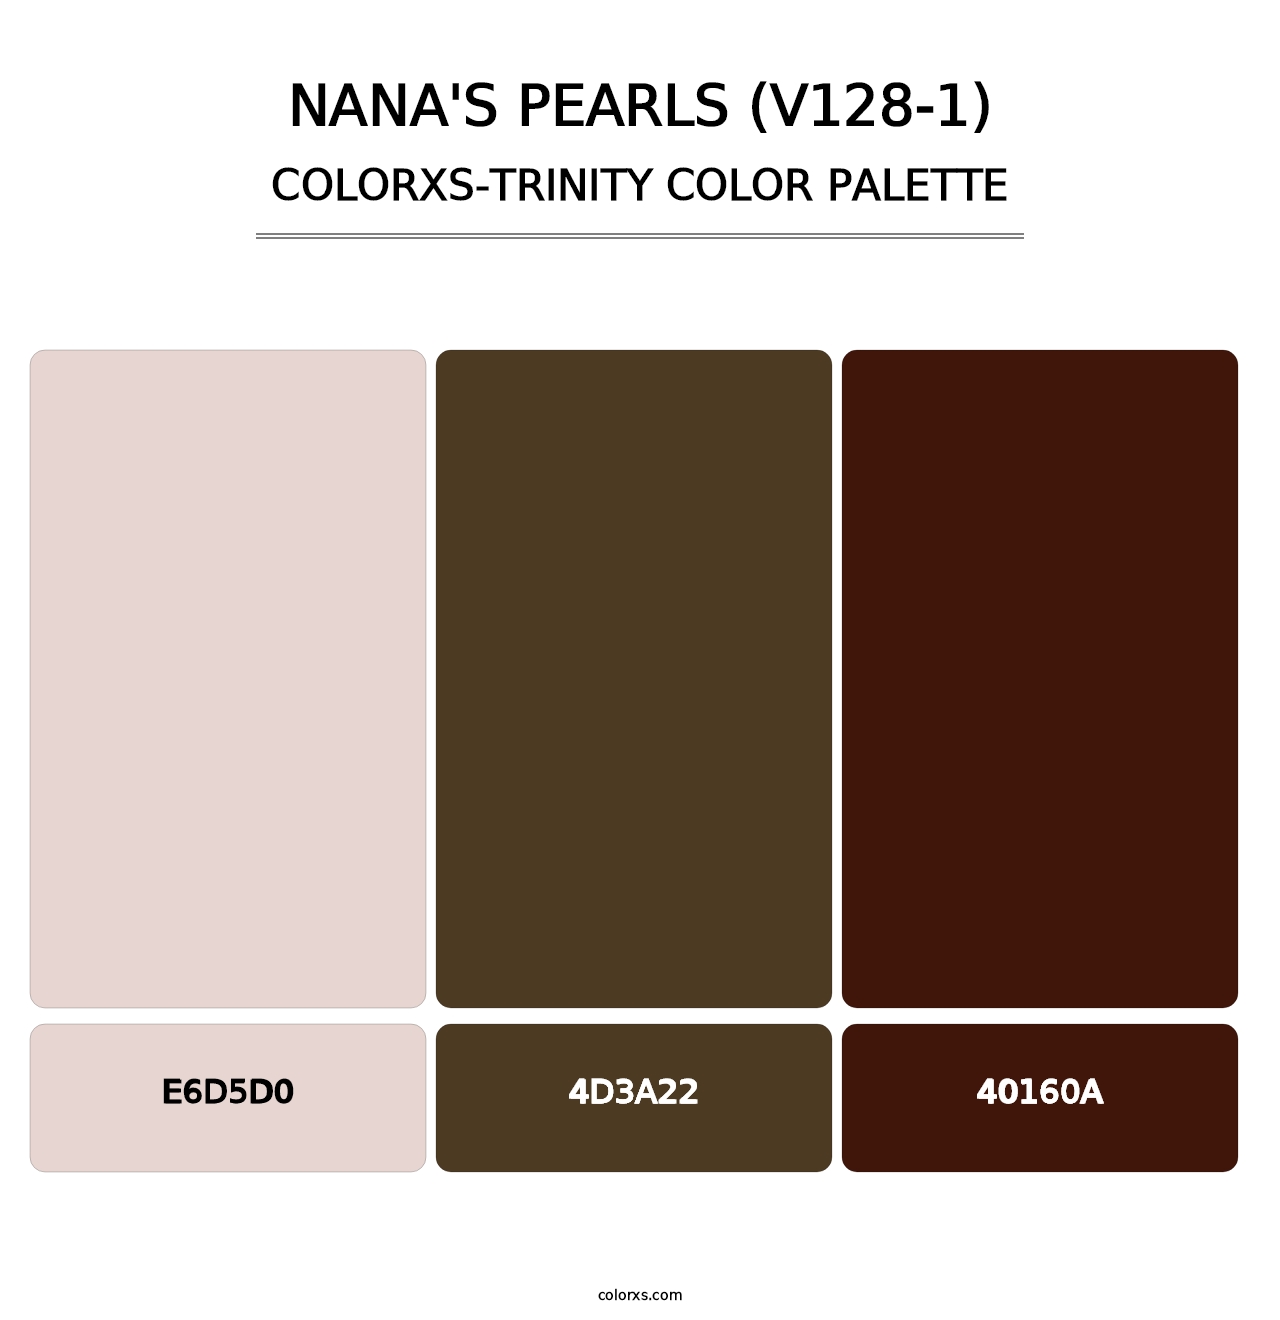 Nana's Pearls (V128-1) - Colorxs Trinity Palette